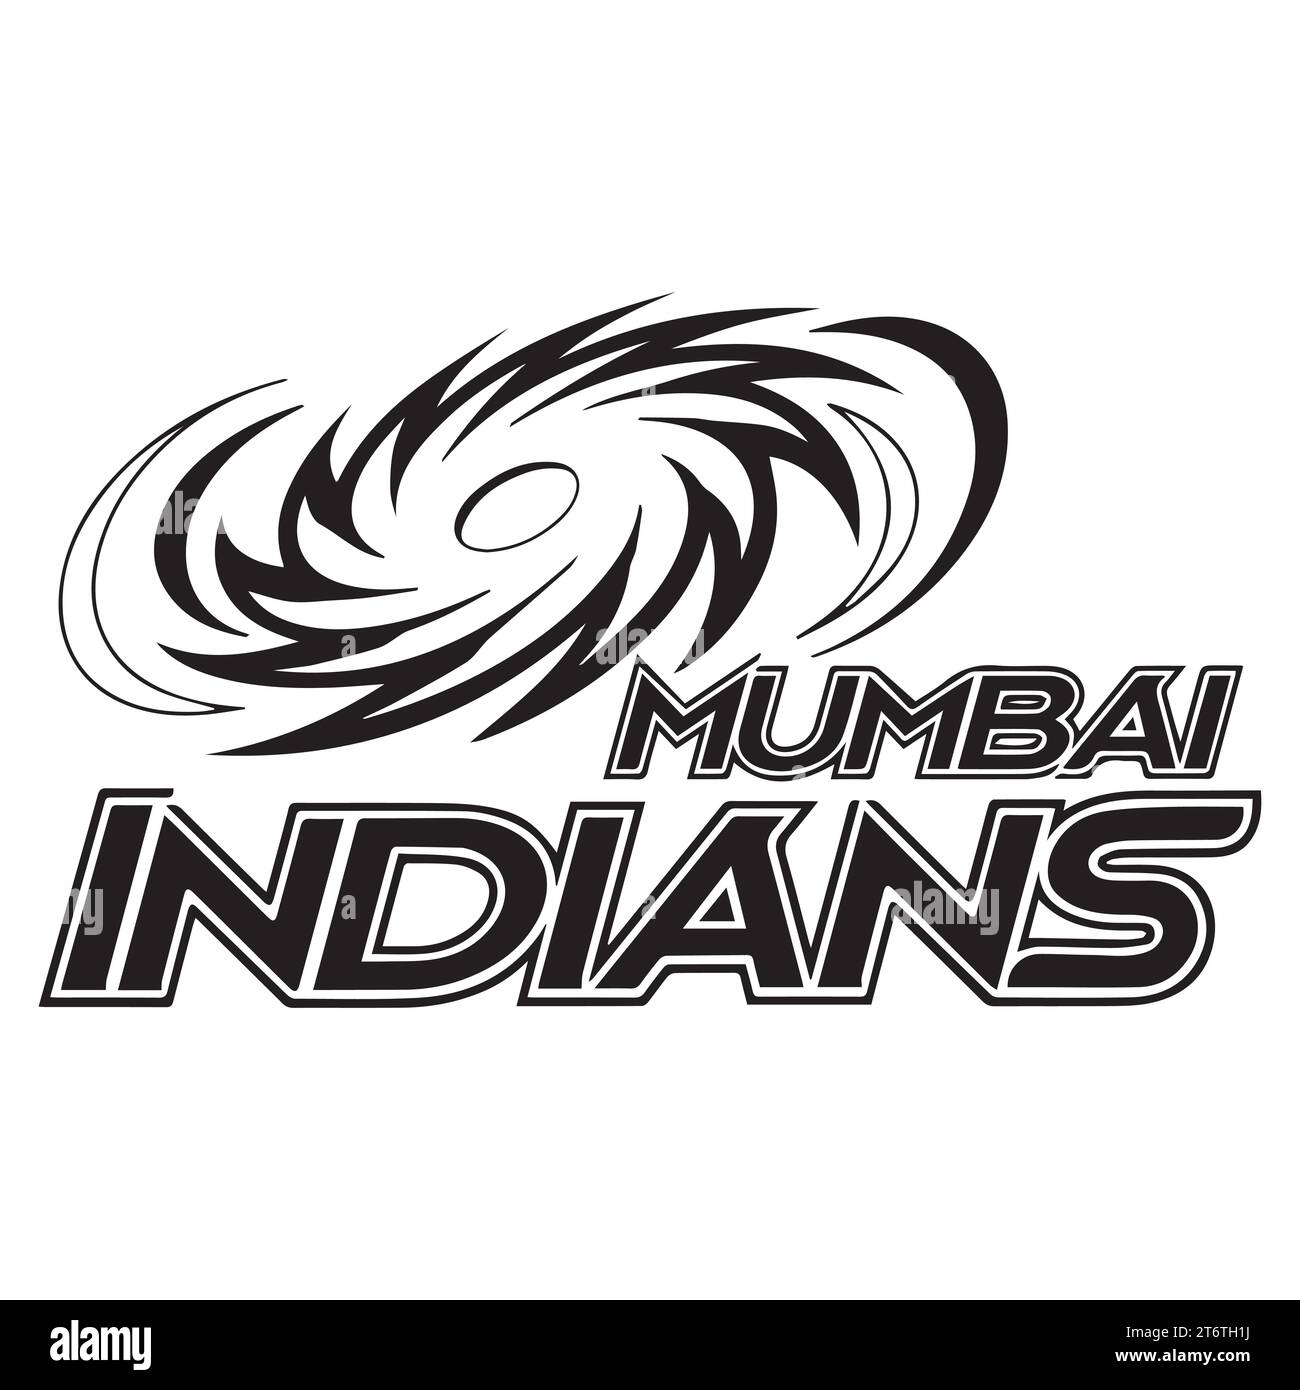 Mumbai Indians logo Black style Club de cricket professionnel indien, Illustration vectorielle Abstract image modifiable Illustration de Vecteur